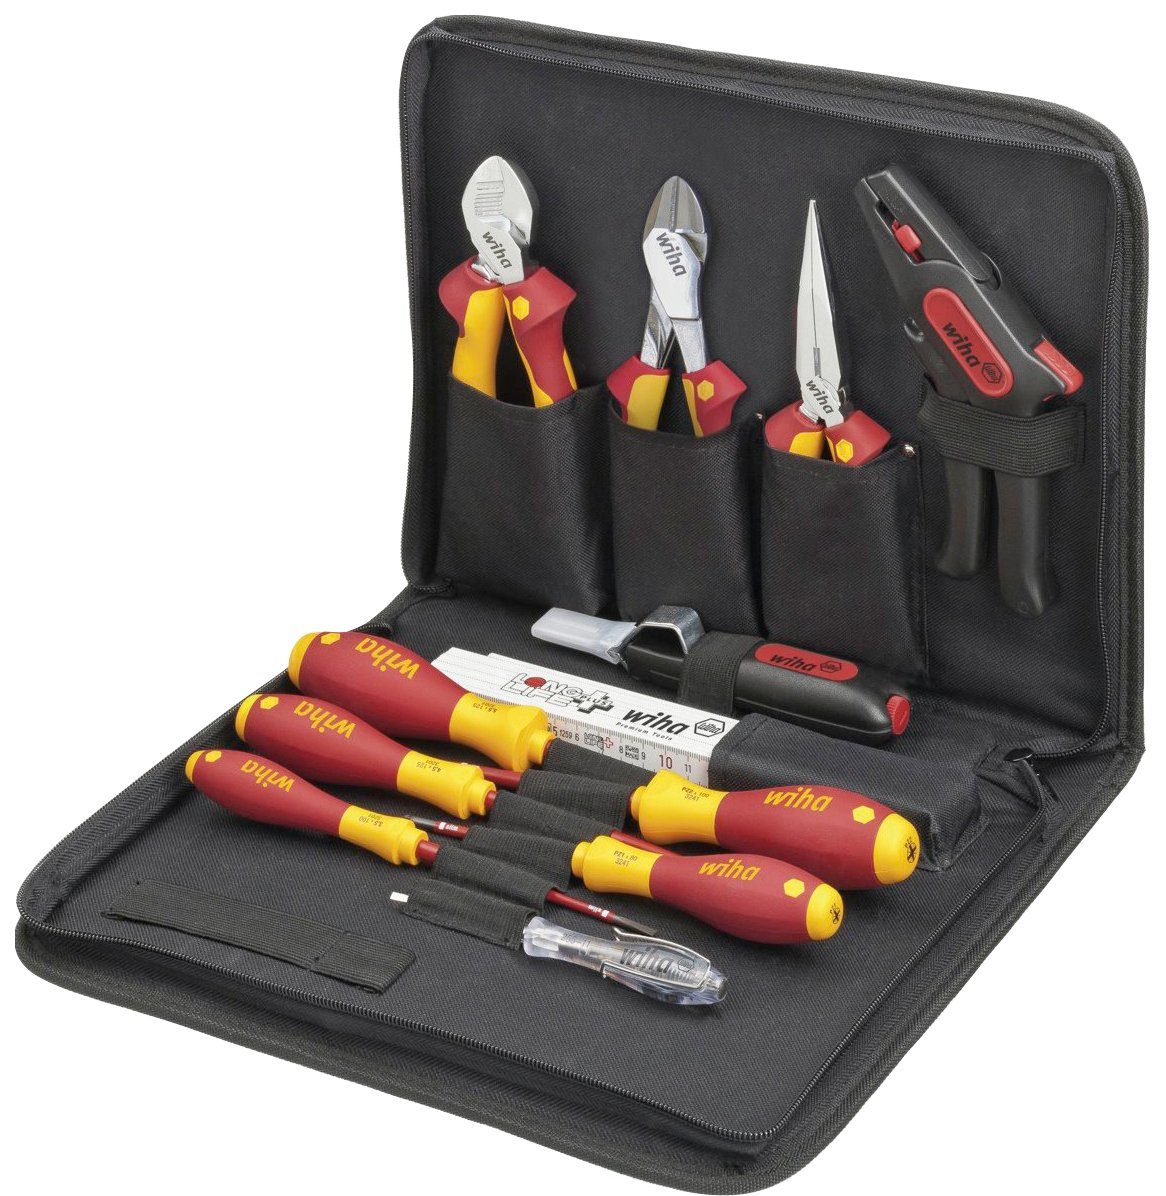 Wiha Werkzeugset 36389, 13-tlg. Elektriker-Set, gemischt, inkl. Werkzeugmappe | Werkzeug-Sets